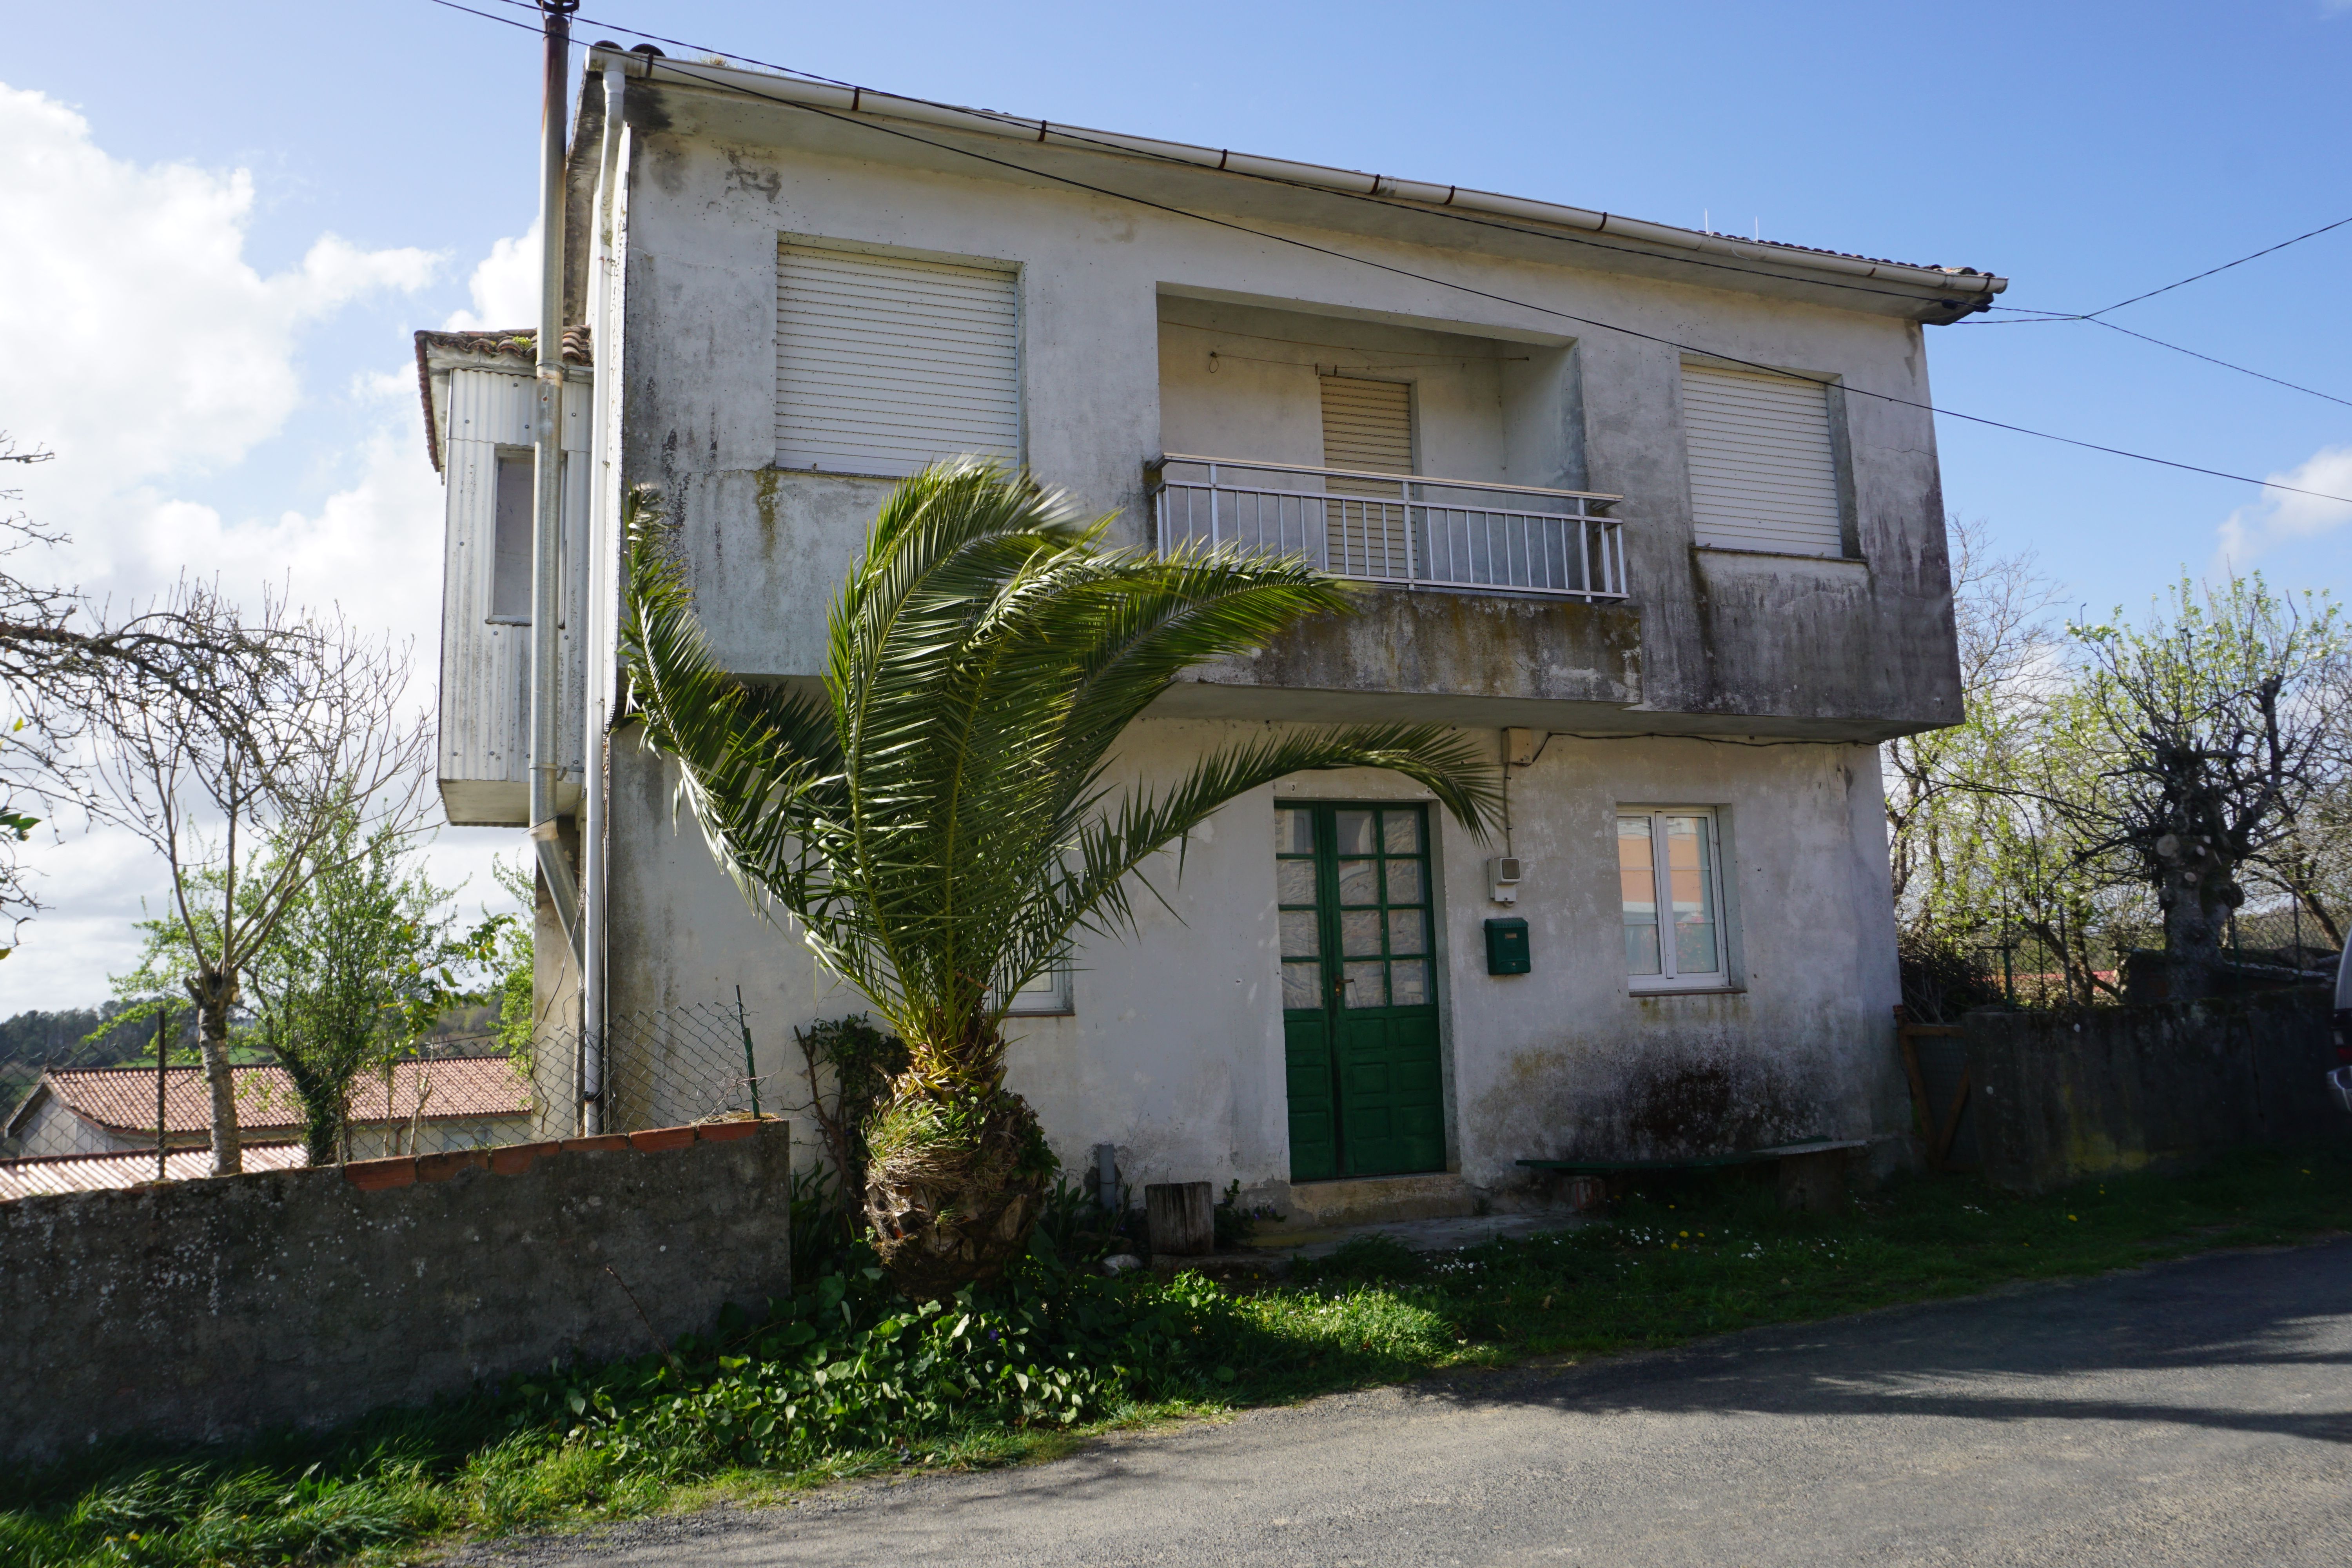 76 Viviendas y casas en venta en Terra de Melide | fotocasa